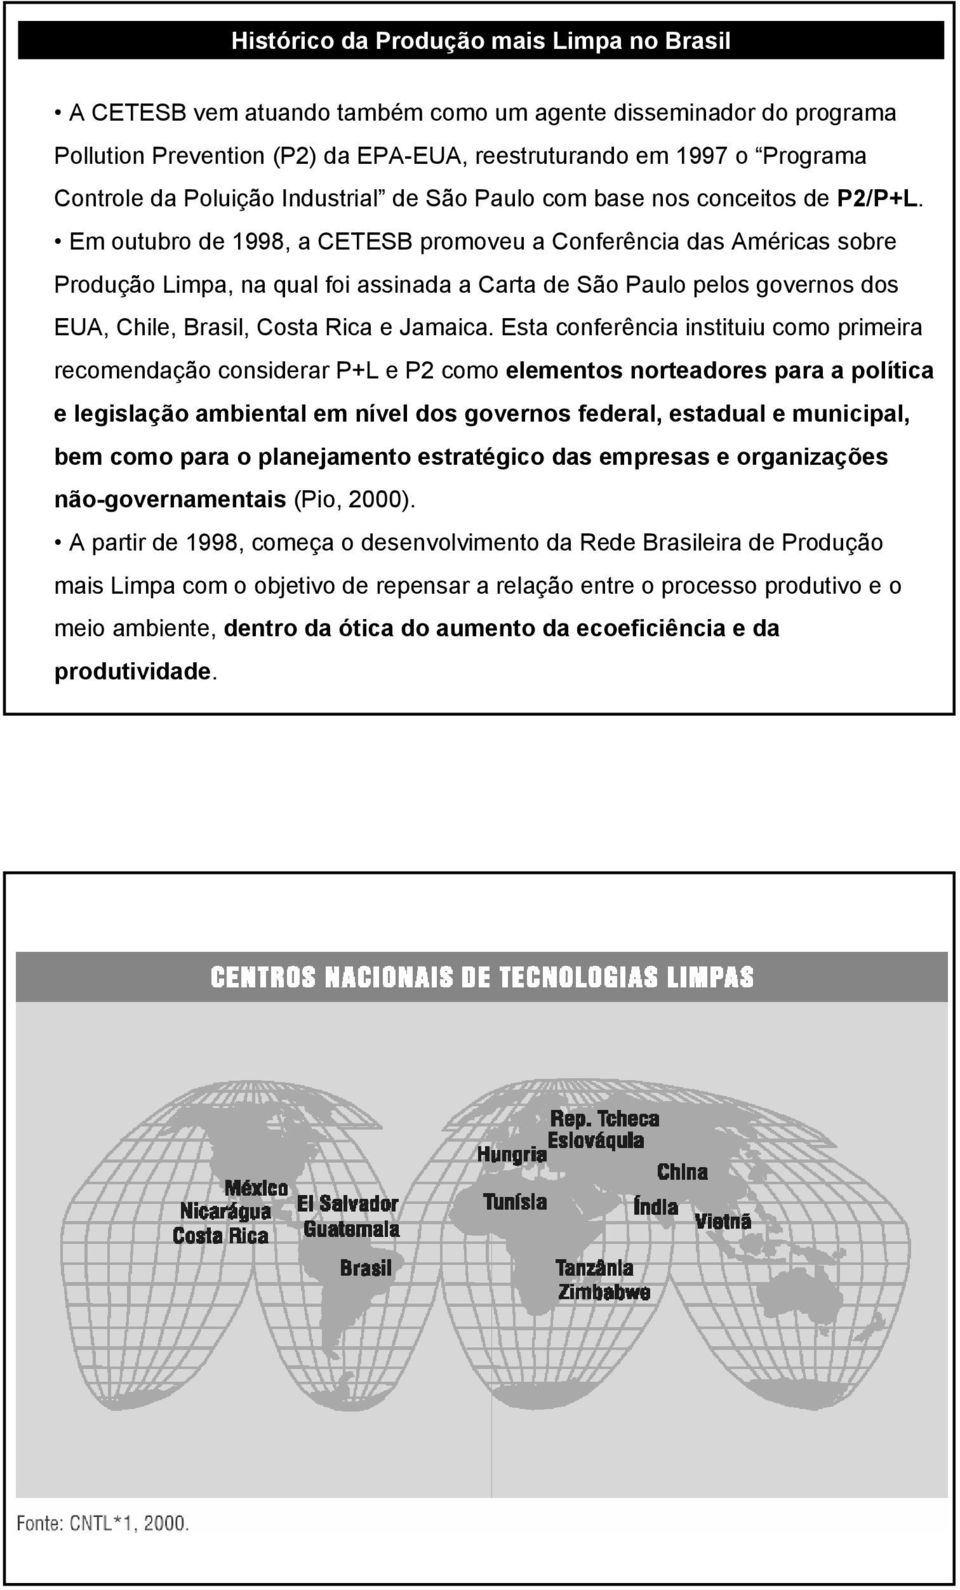 Em outubro de 1998, a CETESB promoveu a Conferência das Américas sobre Produção Limpa, na qual foi assinada a Carta de São Paulo pelos governos dos EUA, Chile, Brasil, Costa Rica e Jamaica.